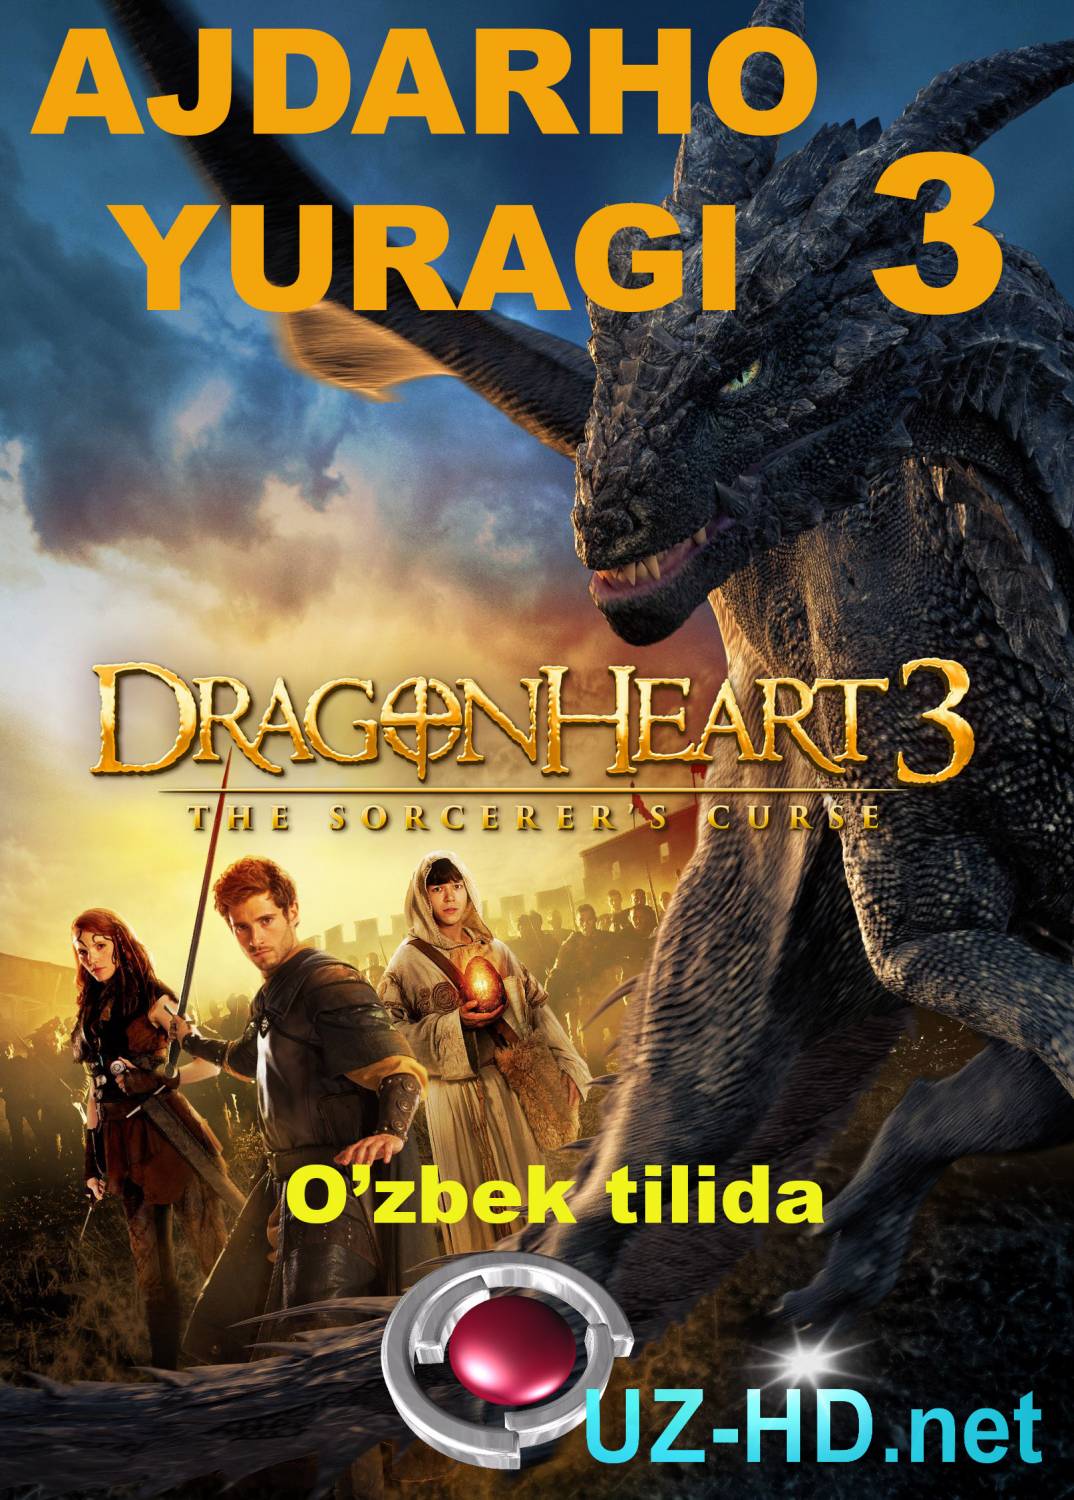 Ajdarho Yuragi 3 \ Dragon Heart 3 (Uzbek Tilida) - смотреть онлайн